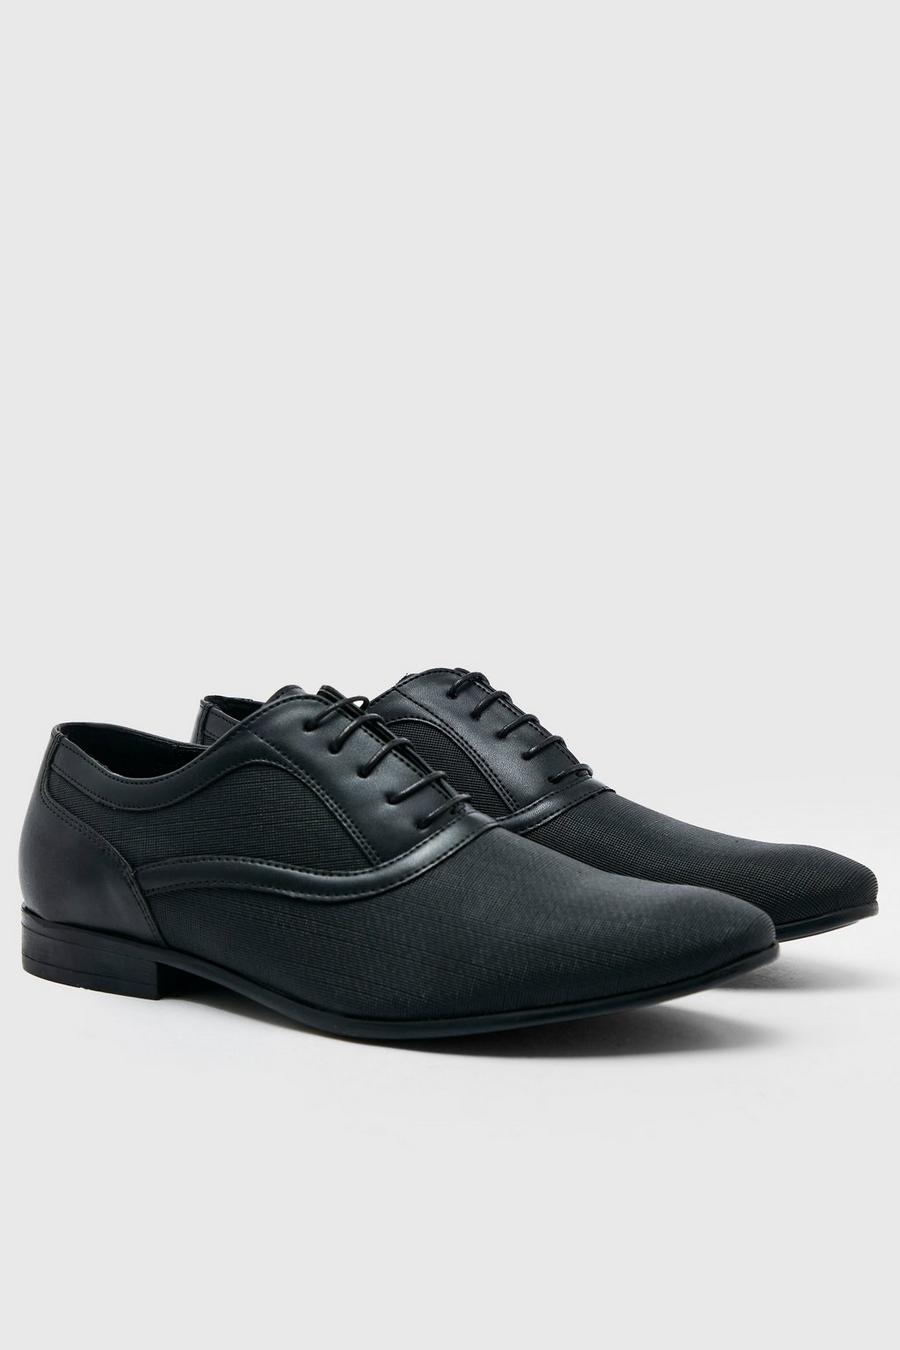 Zapatos Oxford de cuero calado con patrón, Black nero